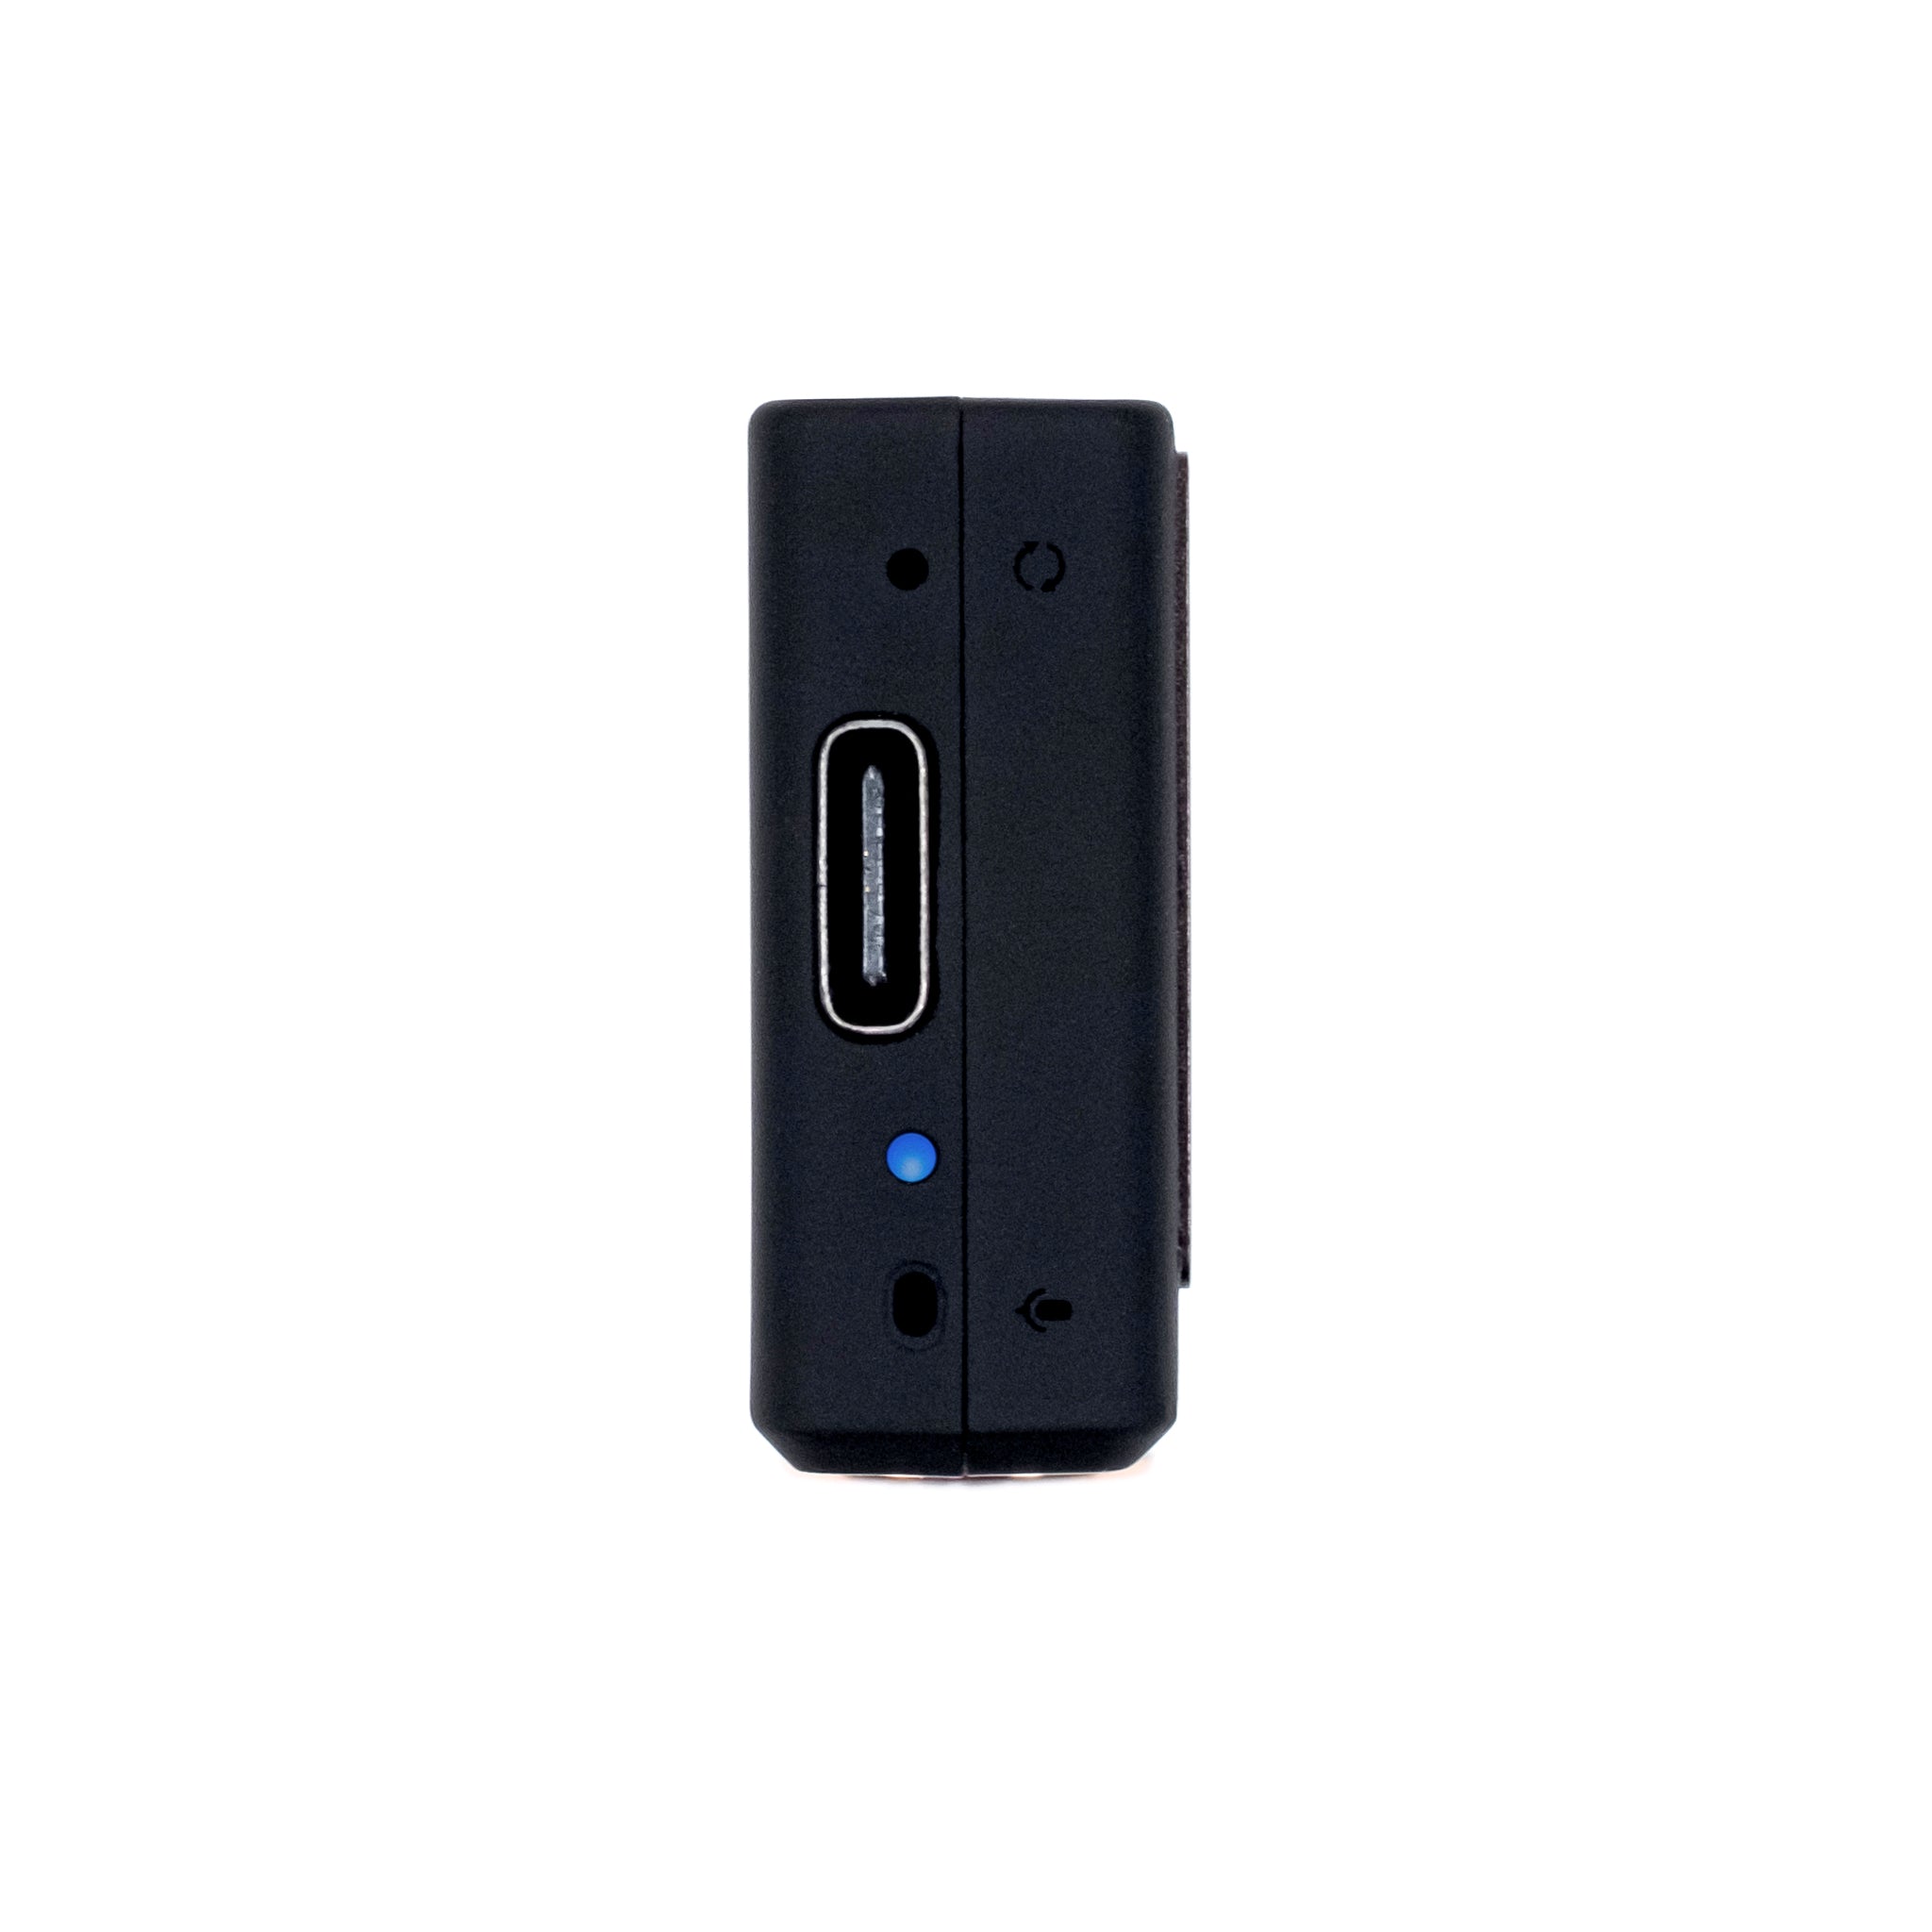 iFi GO blu | Portable HD Bluetooth DAC/Amp